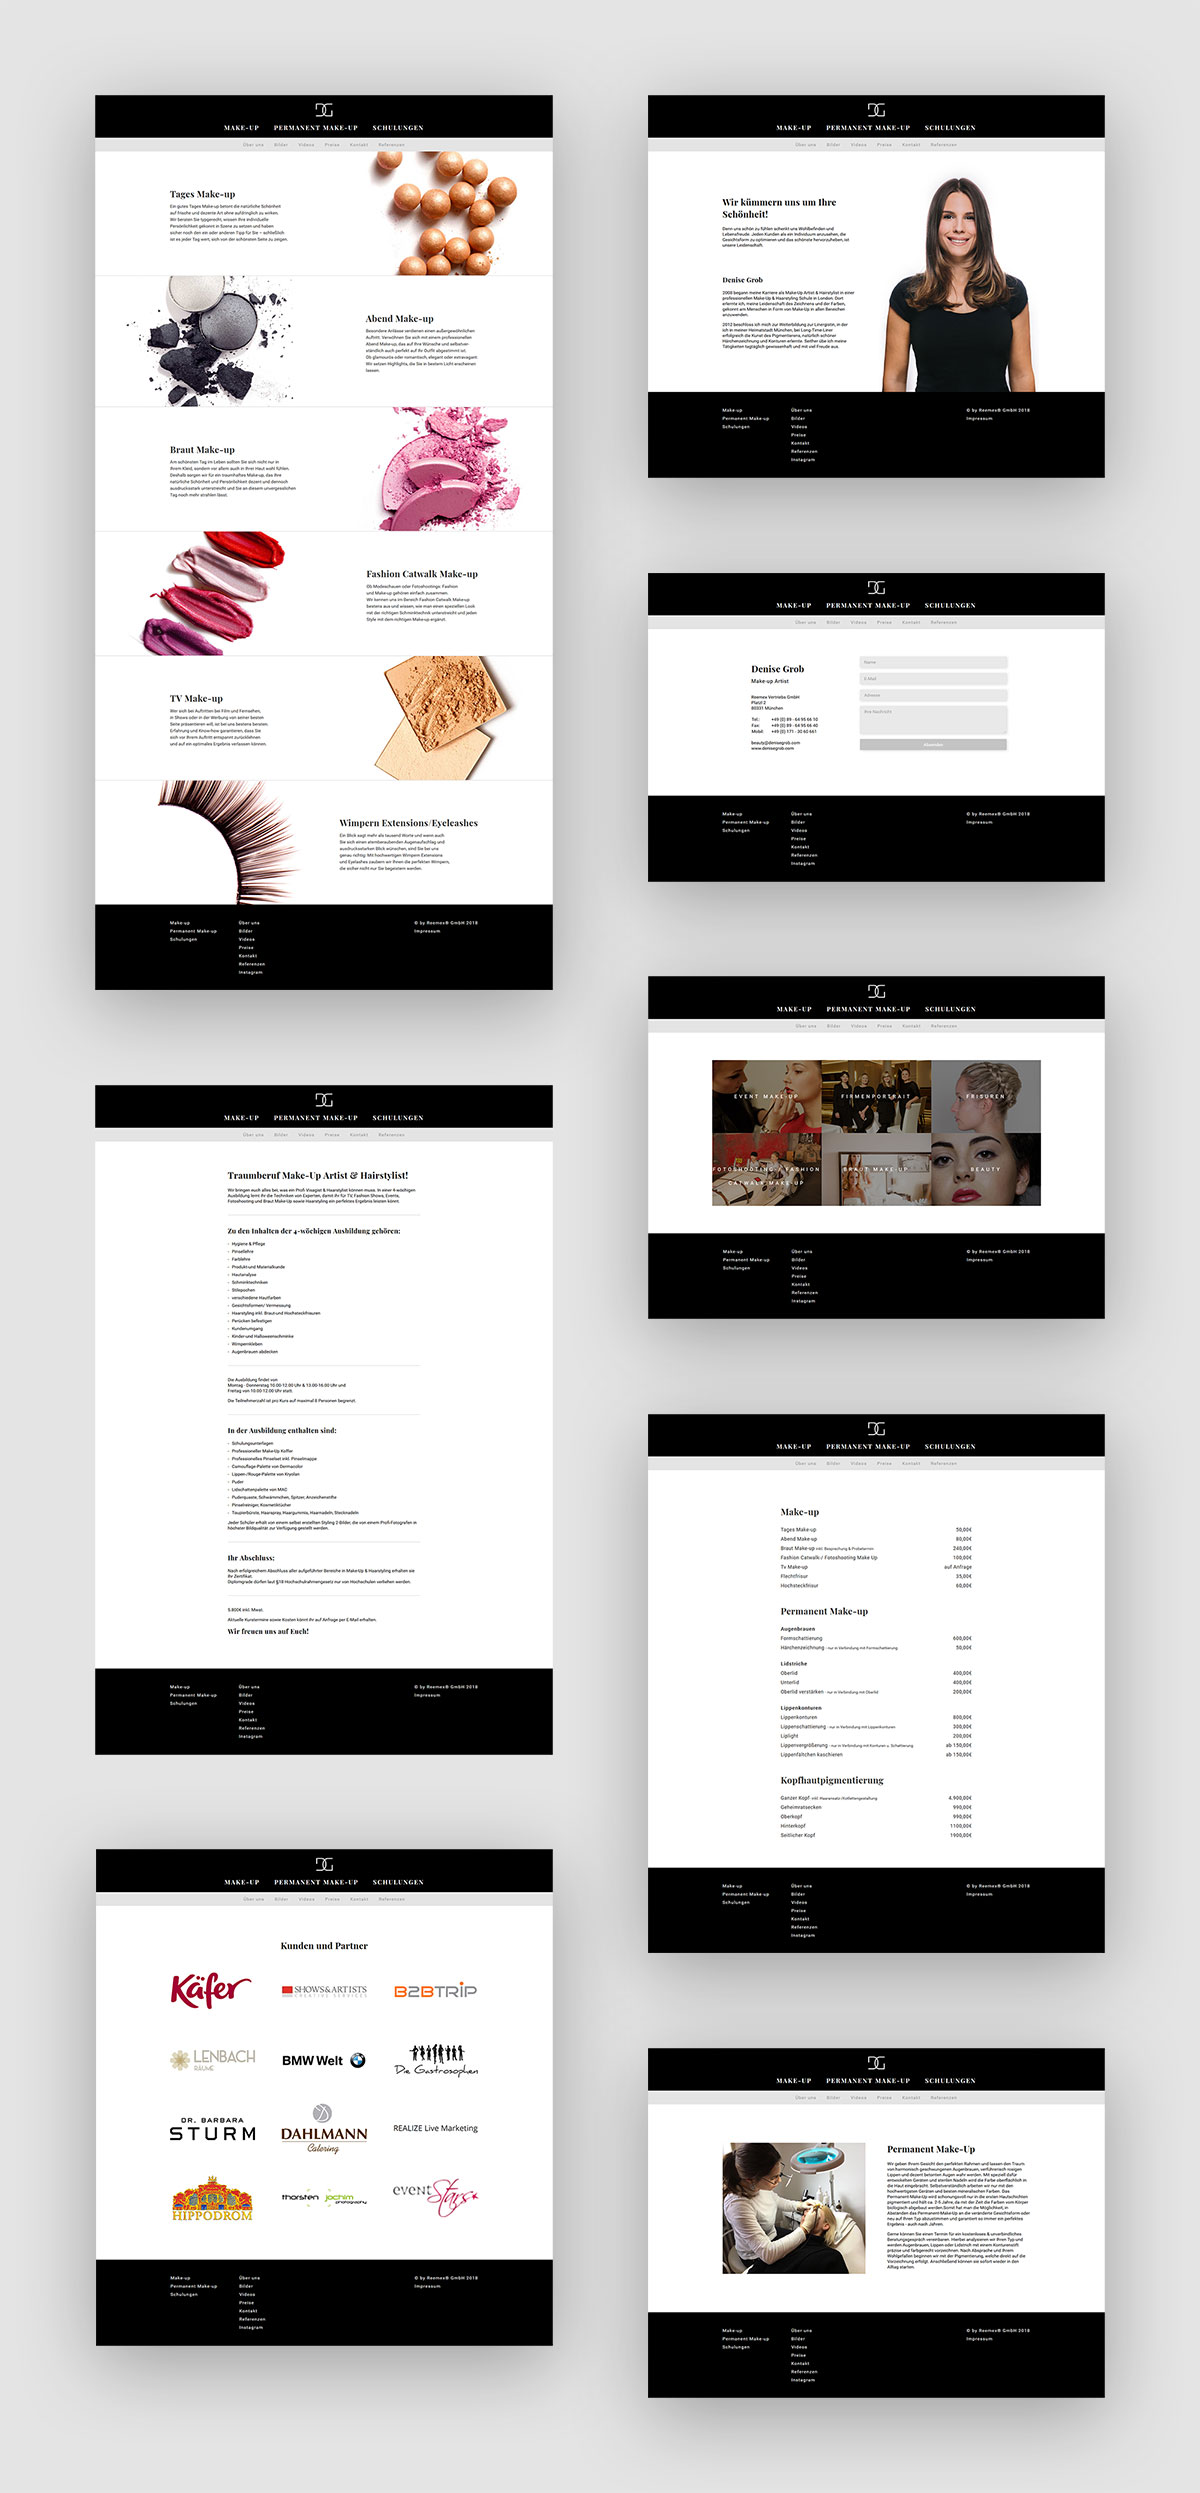 Webdesign Denise Grob - New Website